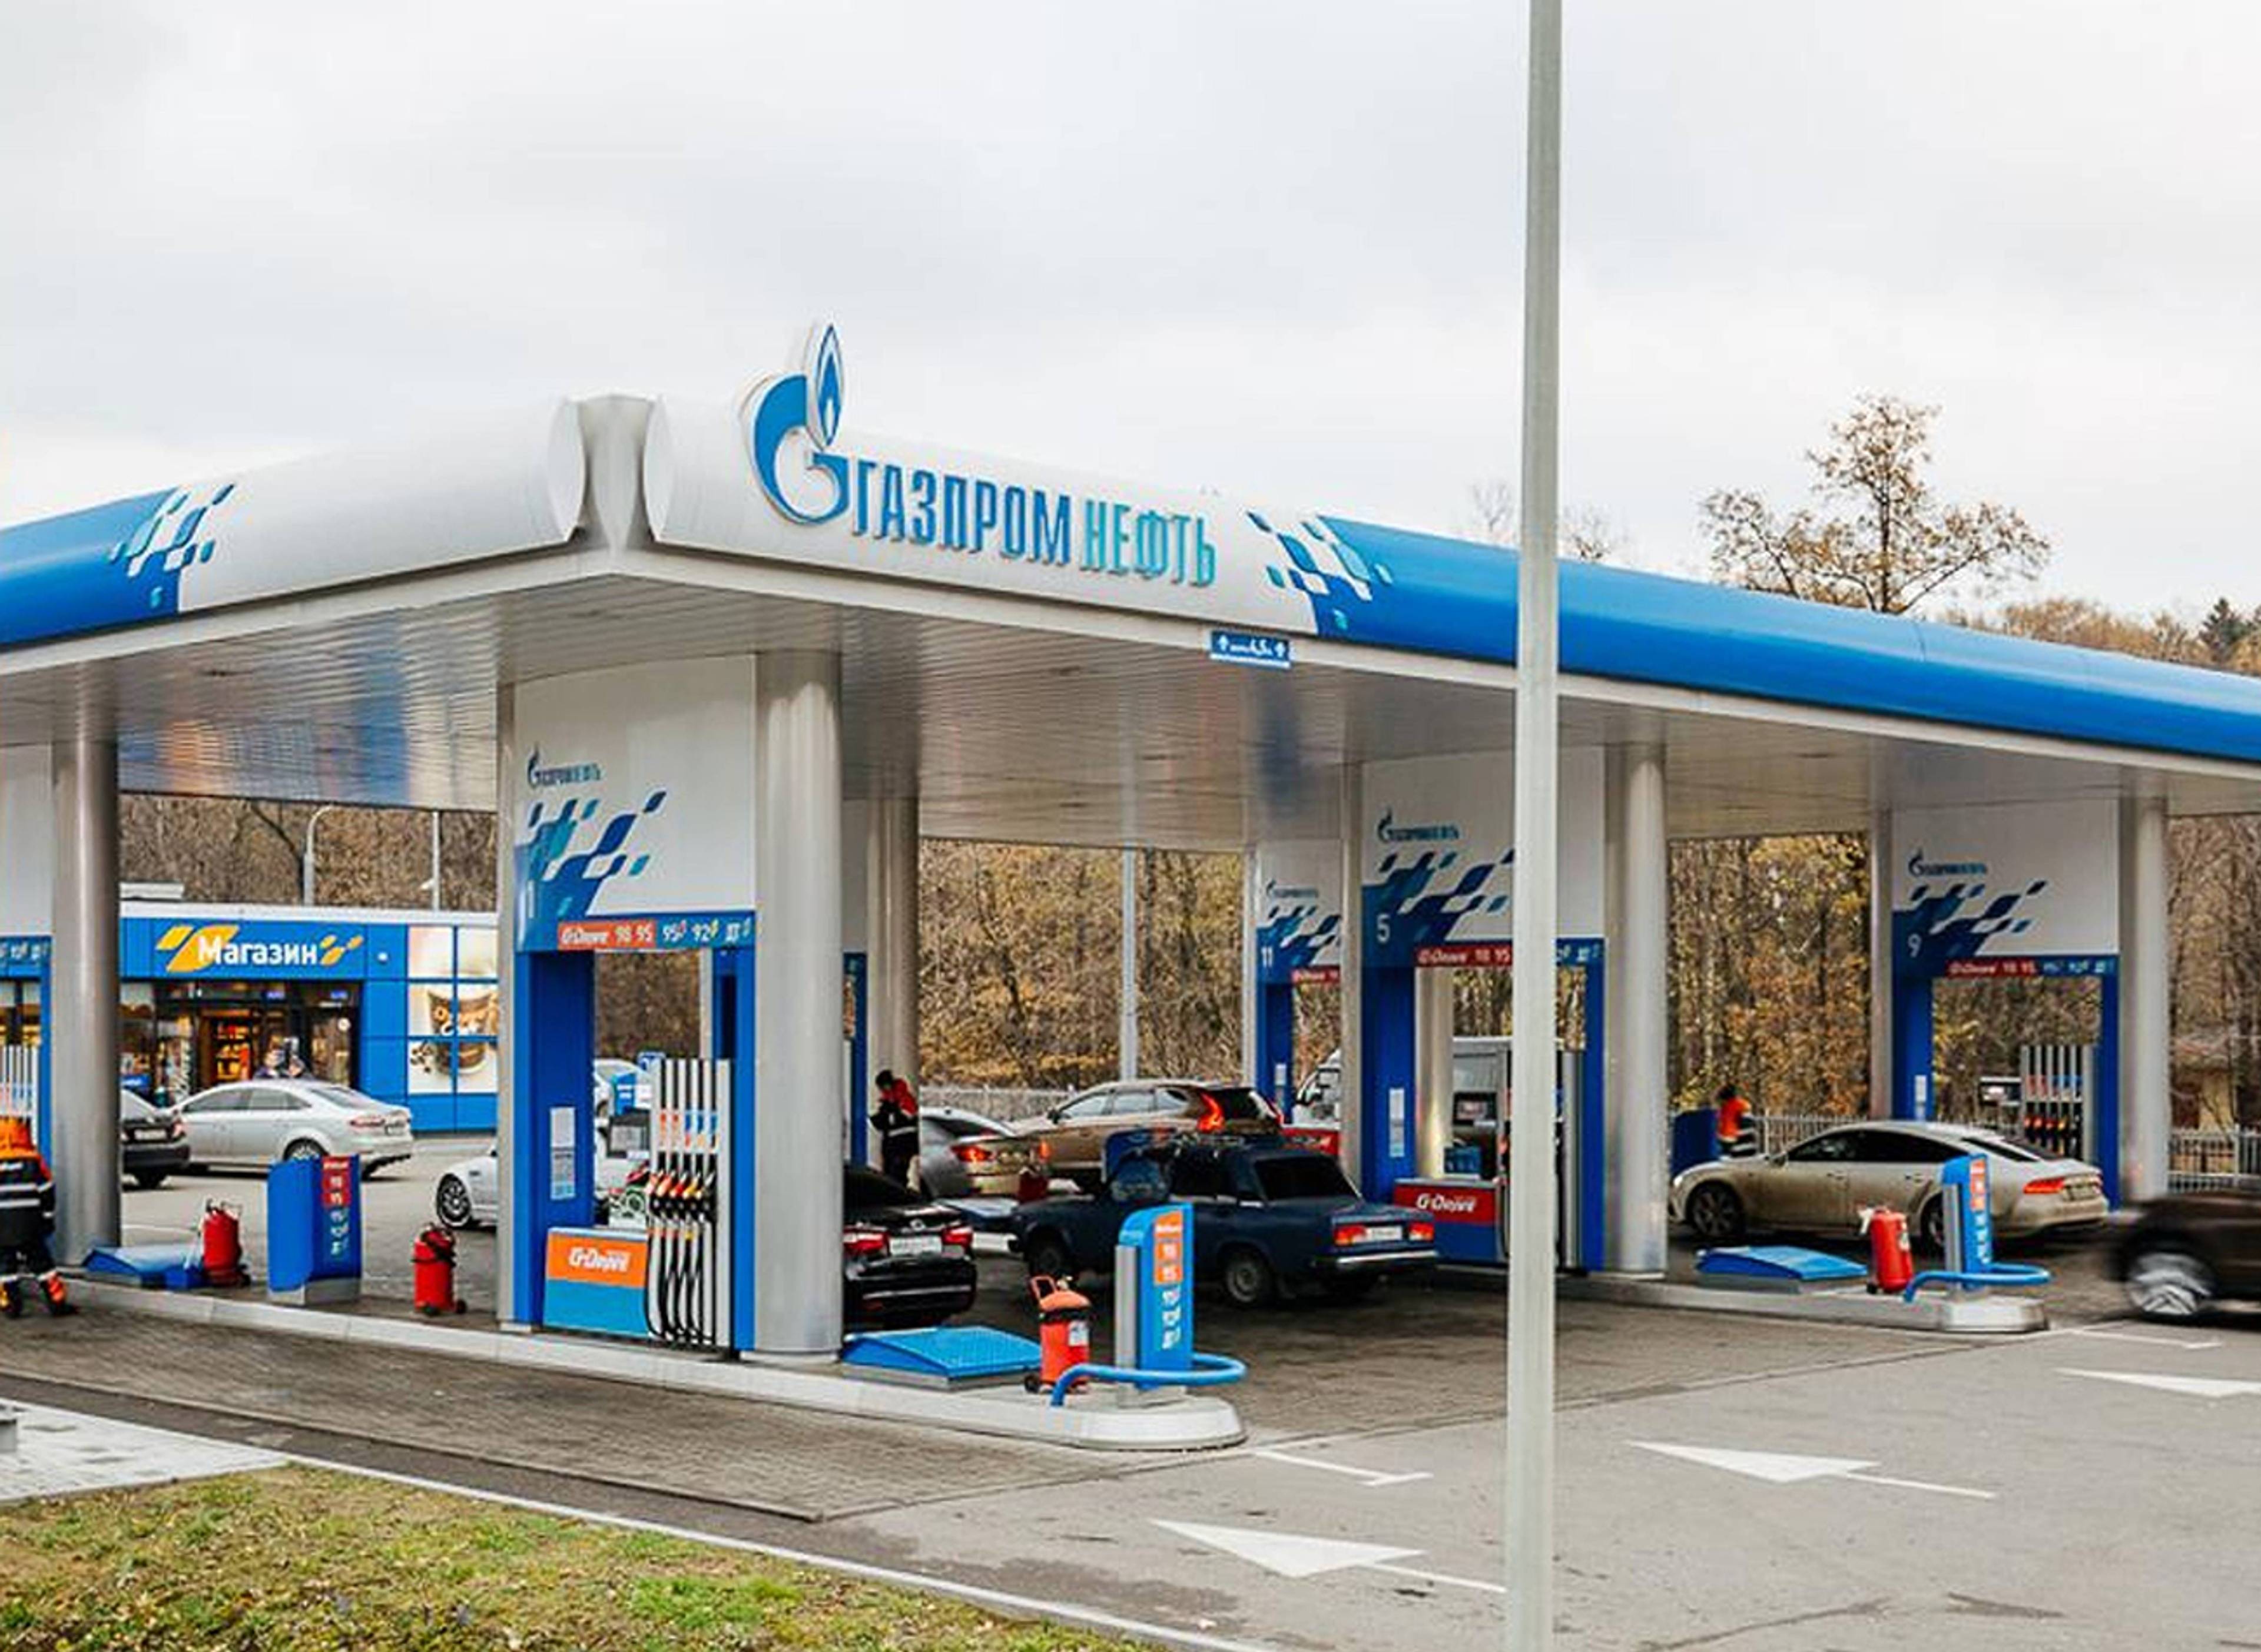 Gazpromneft filling station #22